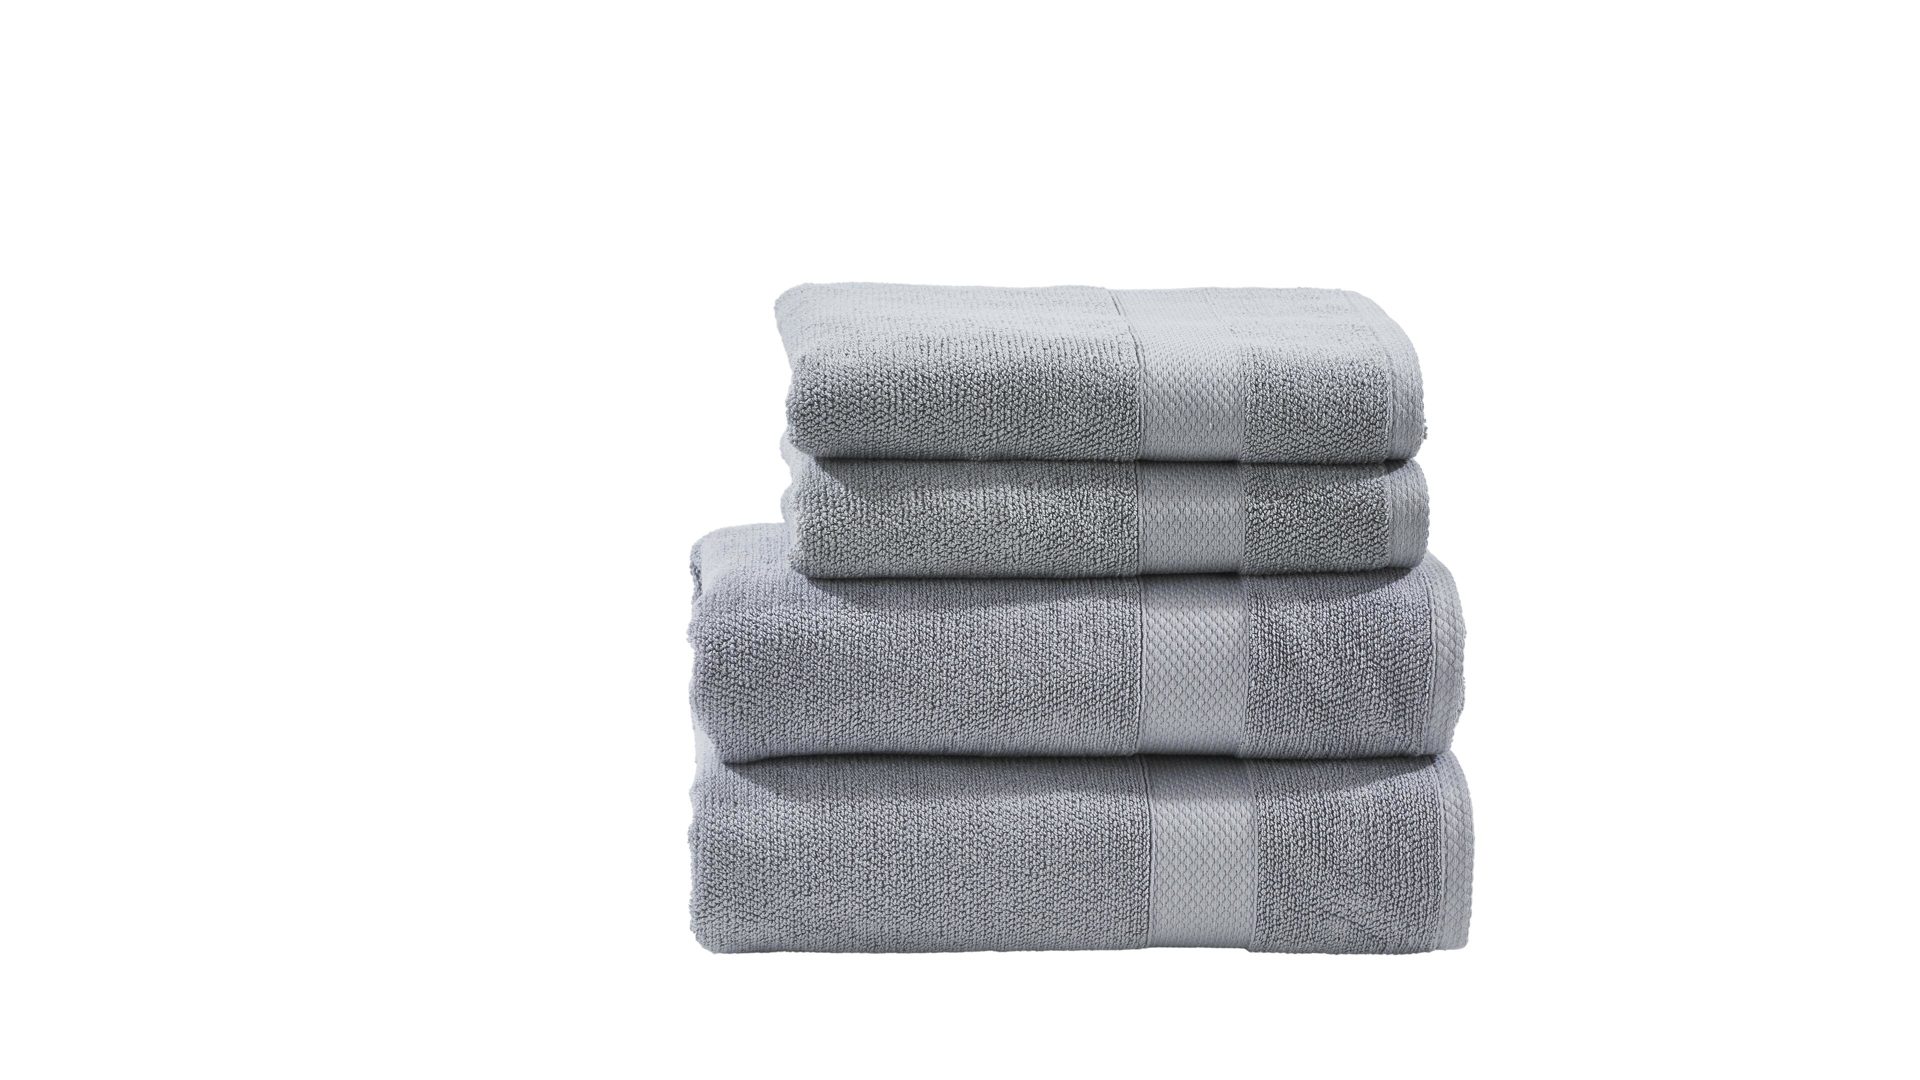 Handtuch-Set Done® be different aus Stoff in Hellgrau DONE® Handtuch-Set Deluxe silberfarbene Baumwolle – vierteilig